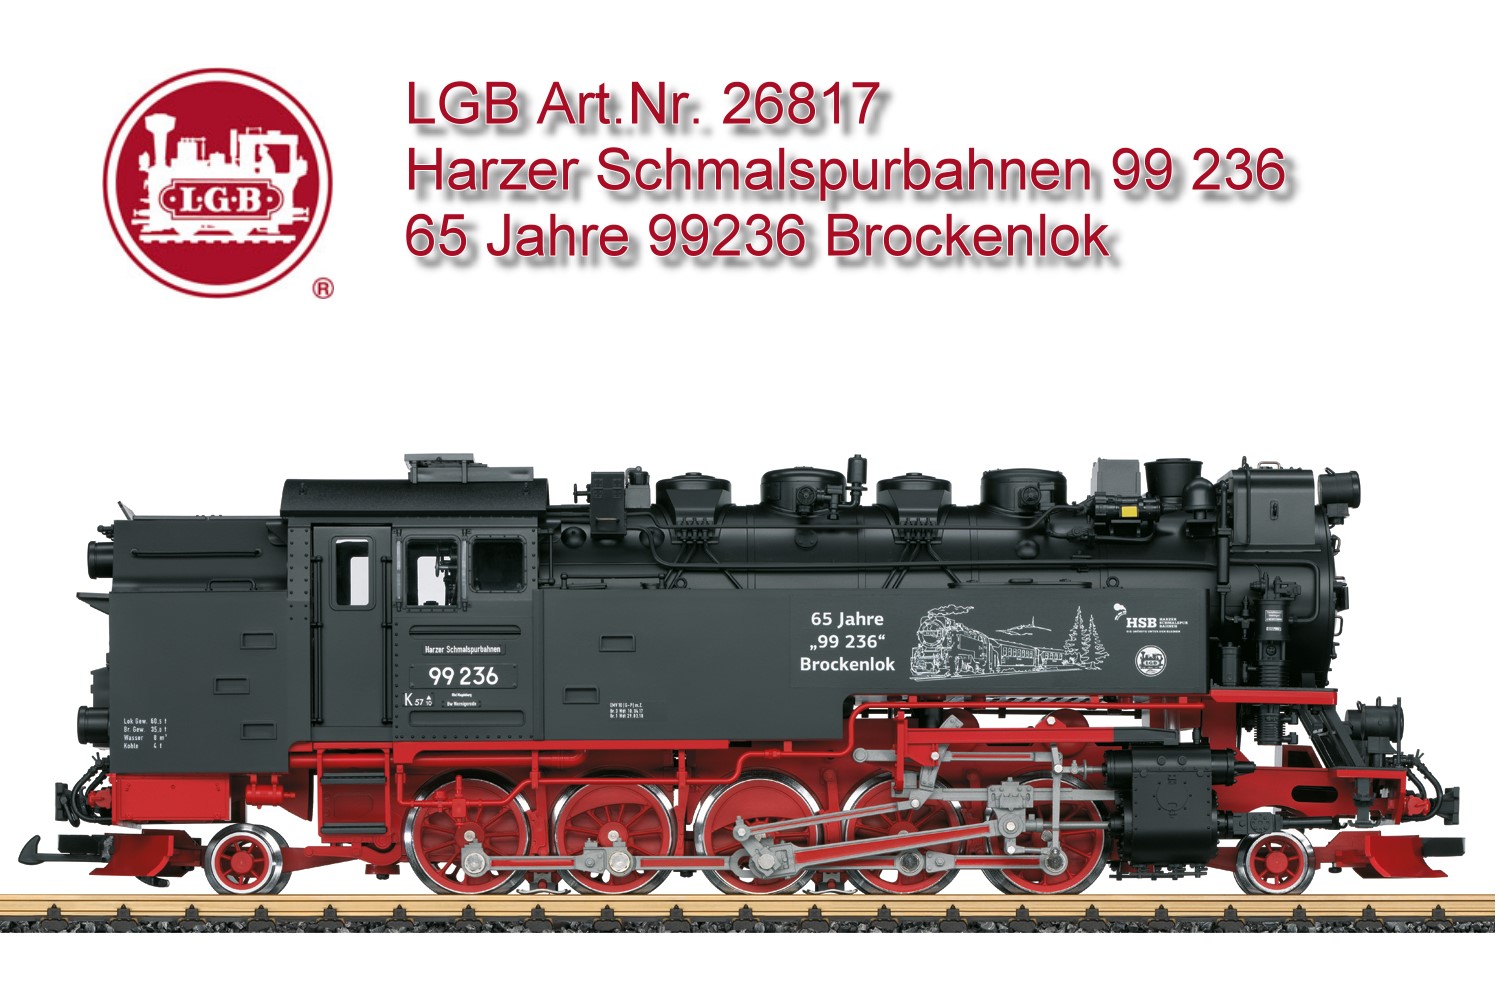 Herzlichen Glckwunsch: 65 Jahre 99236 - Brockenlok. LGB Art. Nr. 26817 Dampflokomotive 99.72